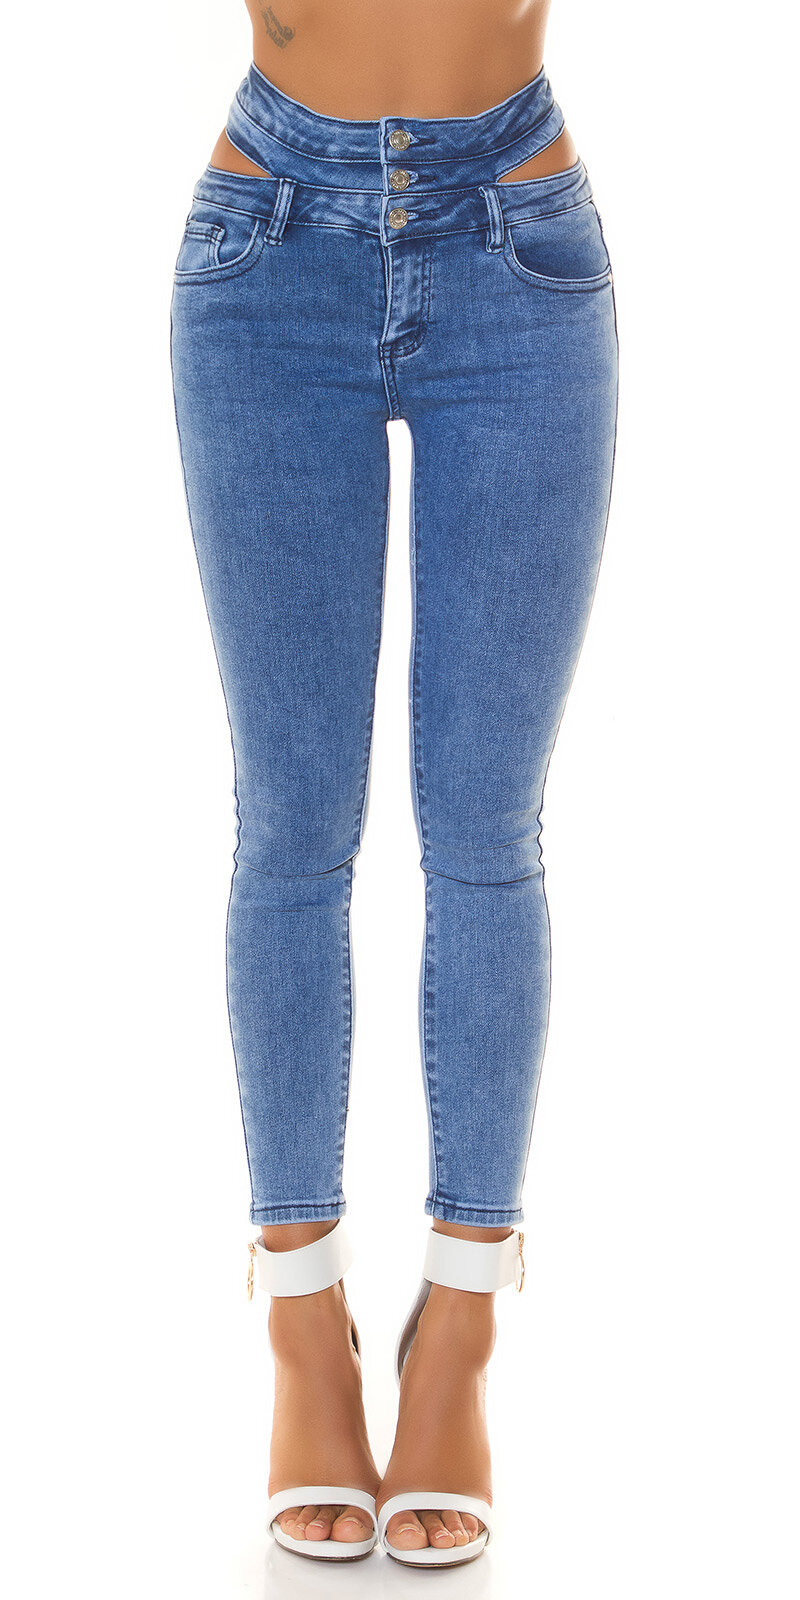 Vysoké džínsy s výrezmi nad bokmi Modrá